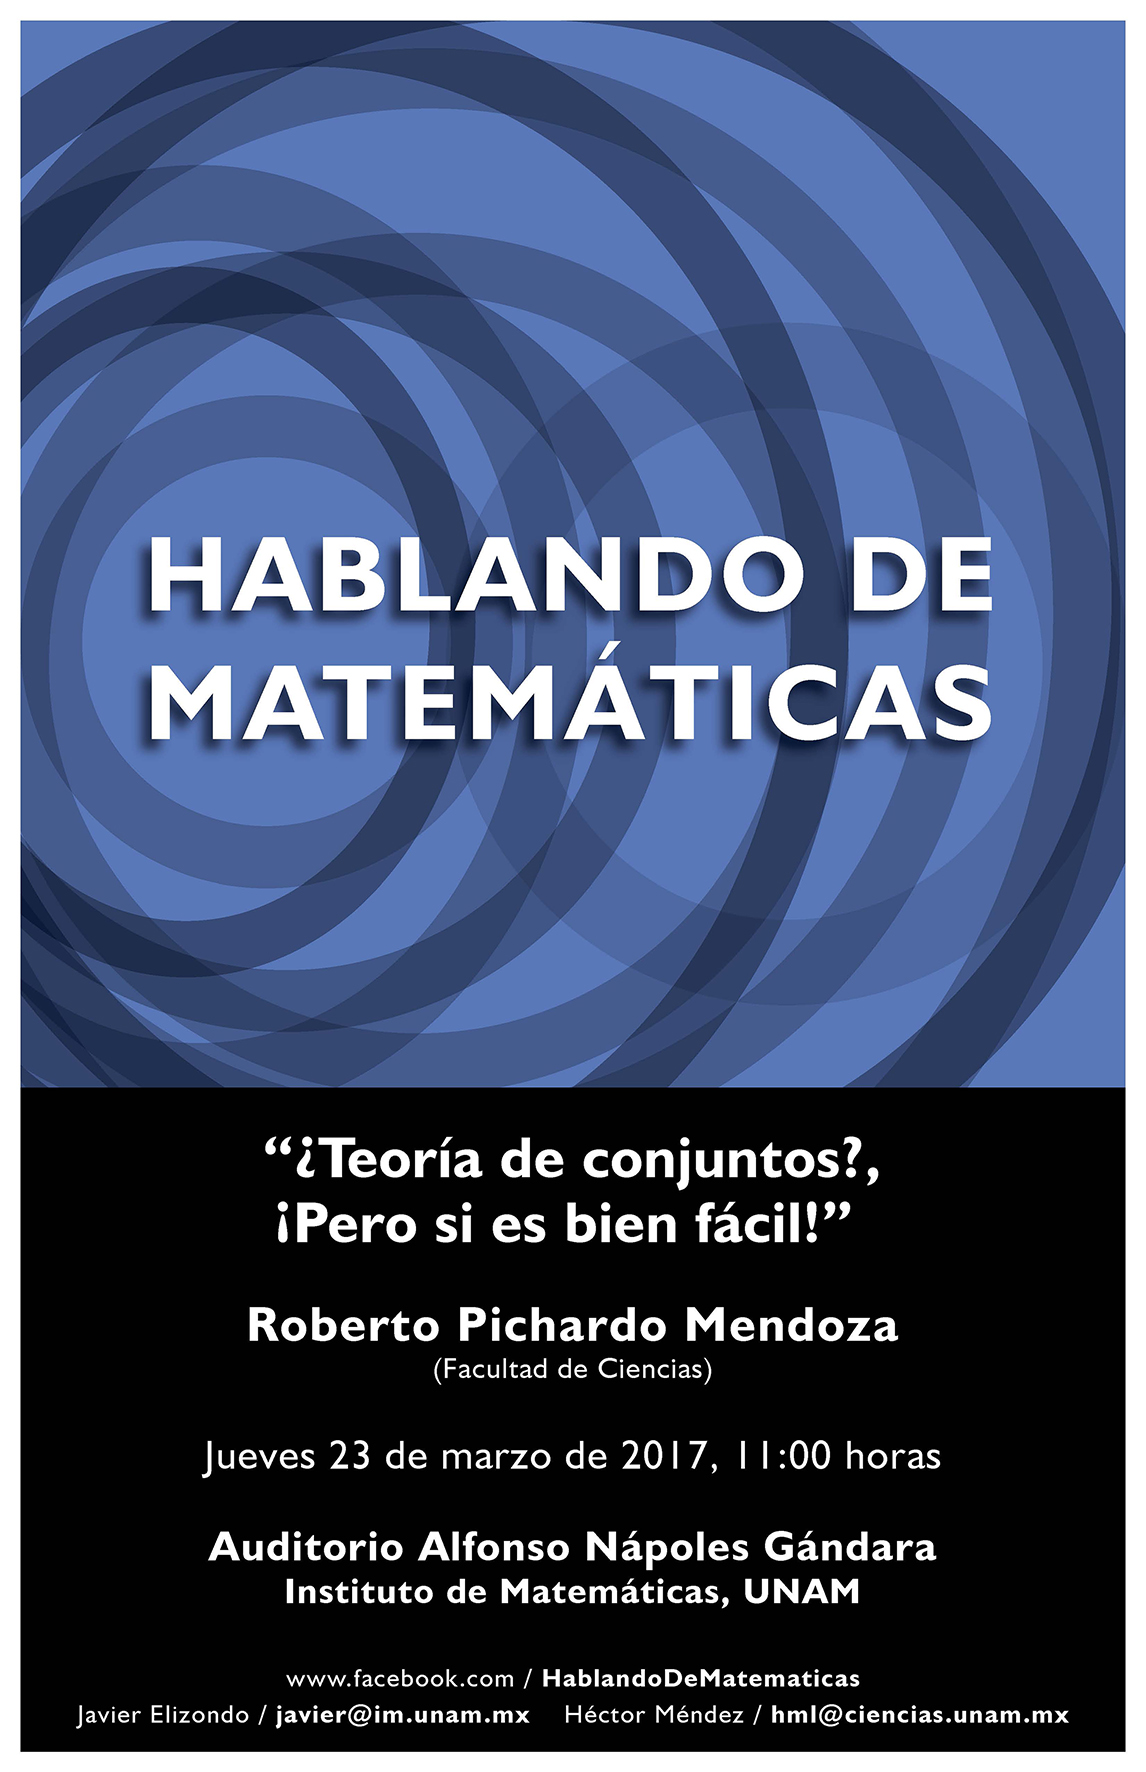 HABLANDO DE MATEMÁTICAS: Roberto Pichardo, Facultad de Ciencias, UNAM